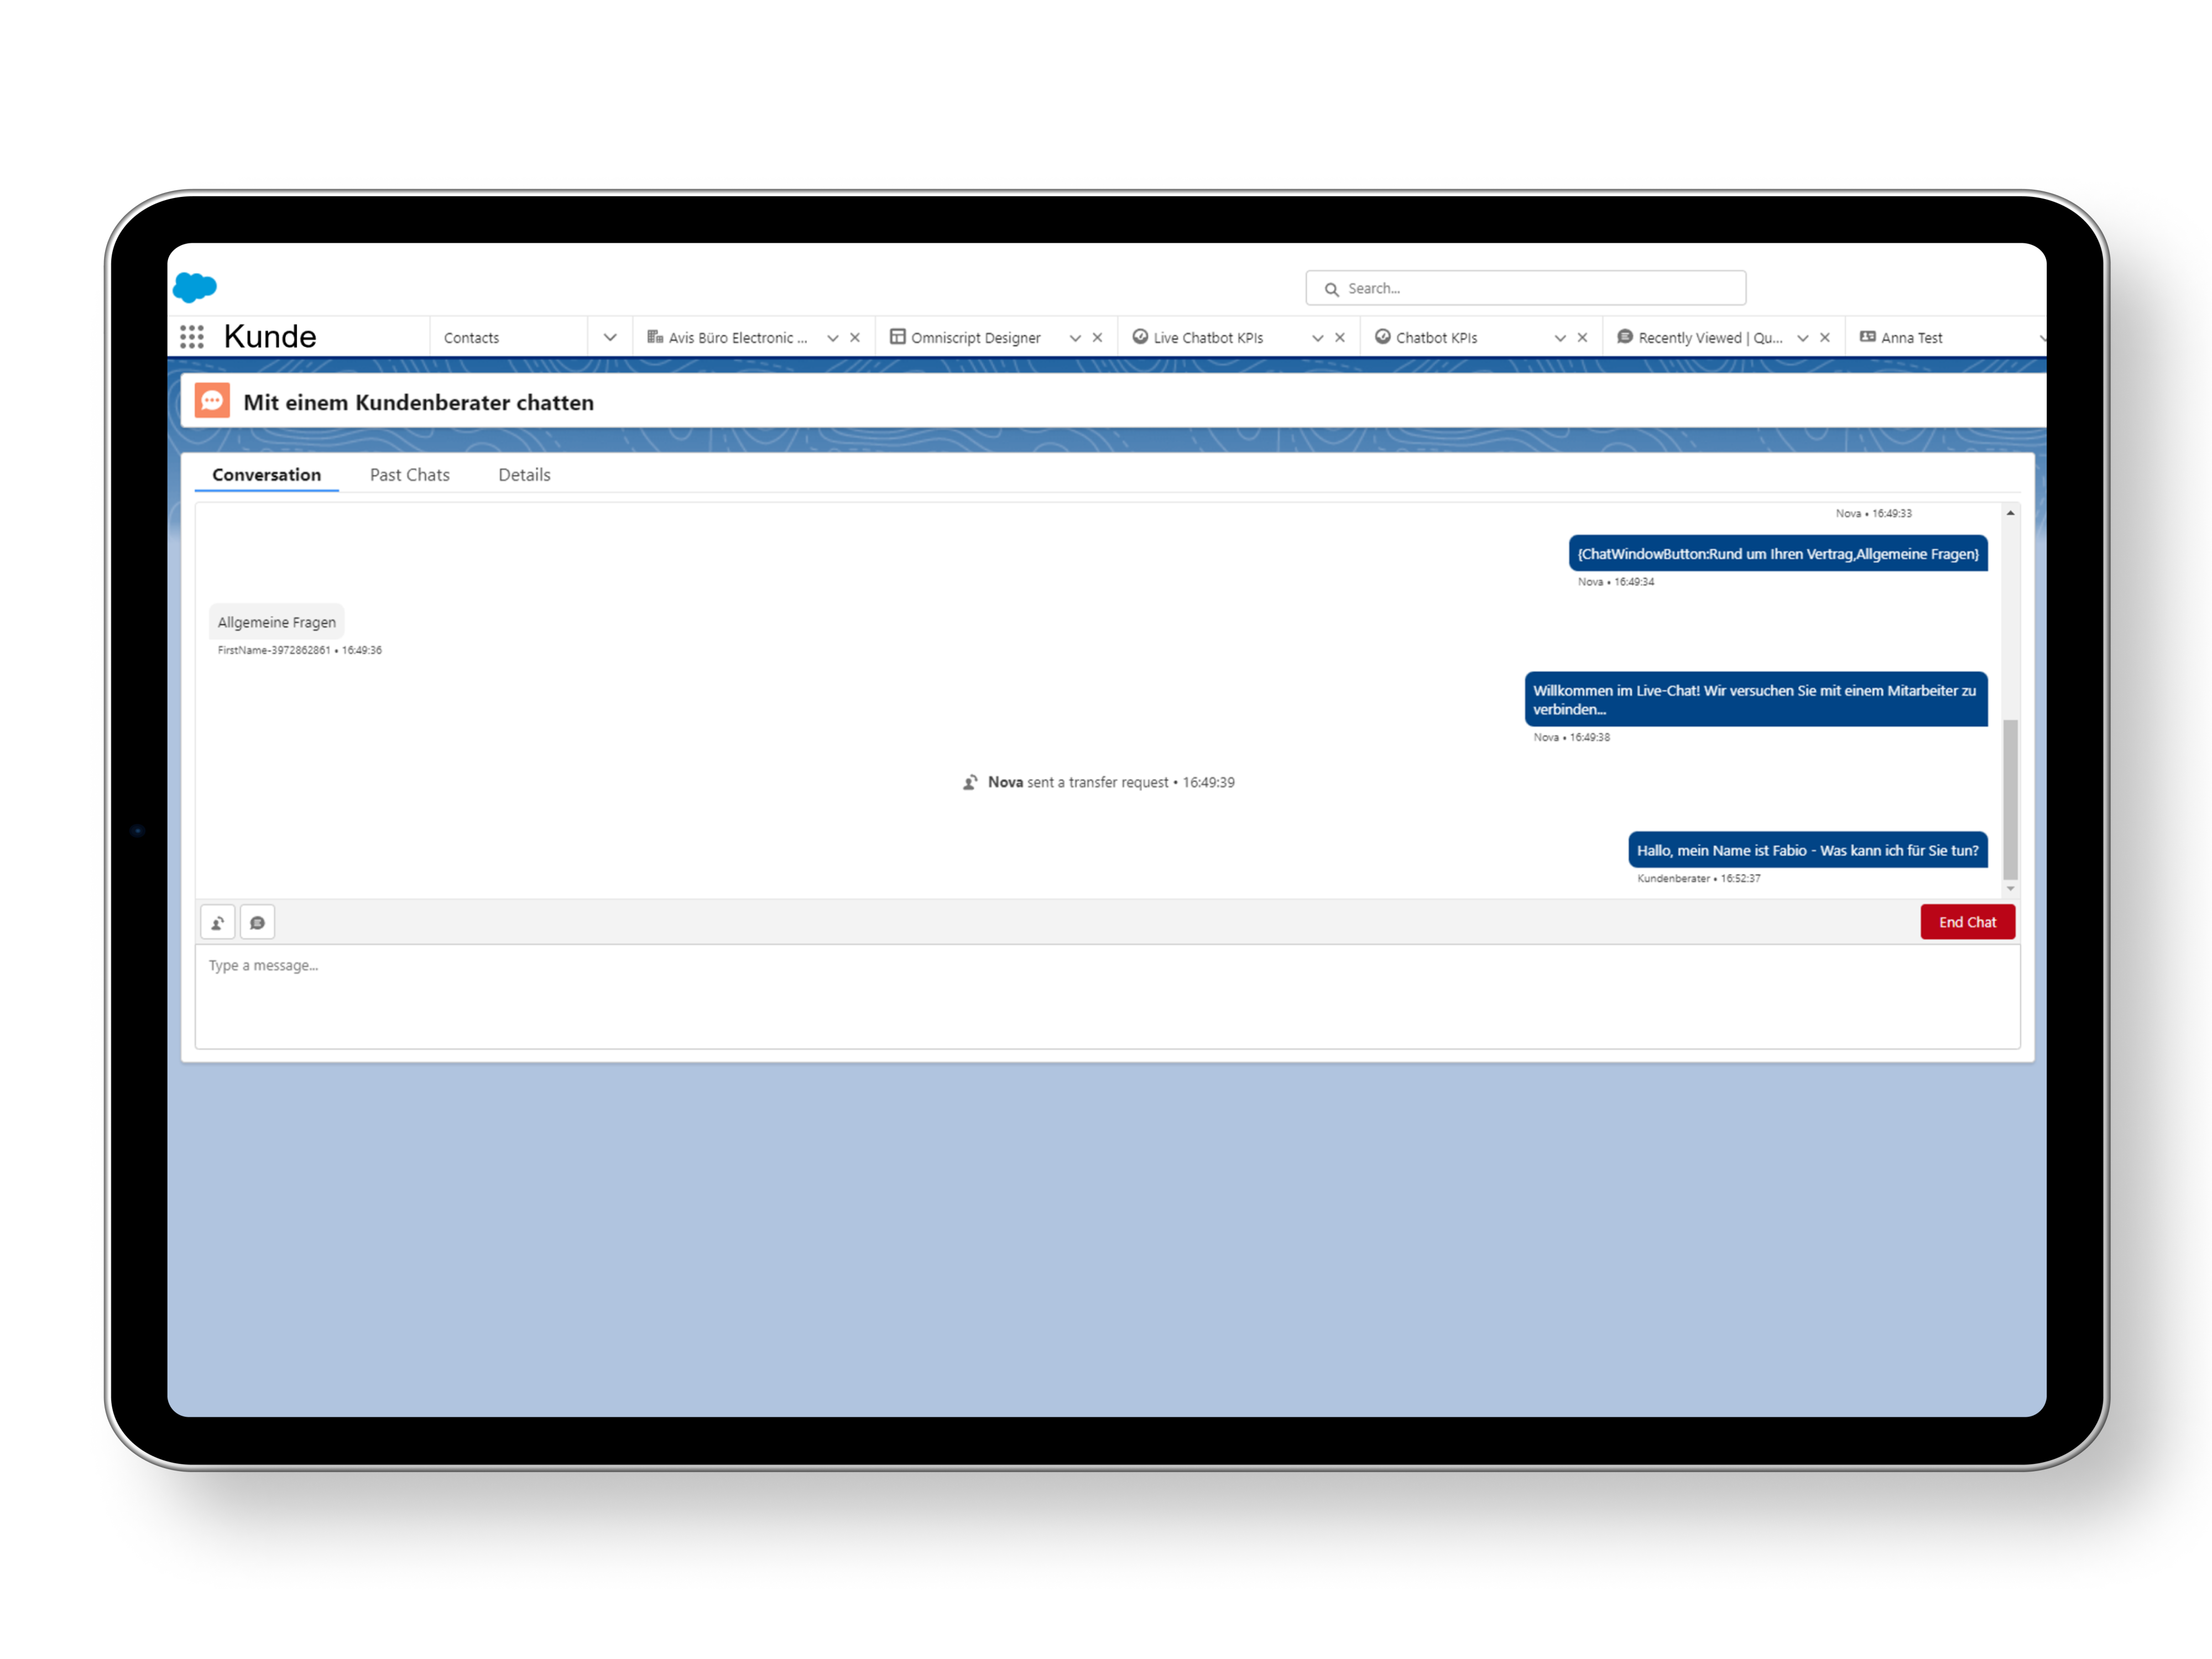 Der Screenshot zeigt die Salesforce-Maske, auf dem ein Chatverlauf dargestellt ist. Es handelt sich hierbei um die Live-Chat-Funktion der Energy & Utilities Cloud. 